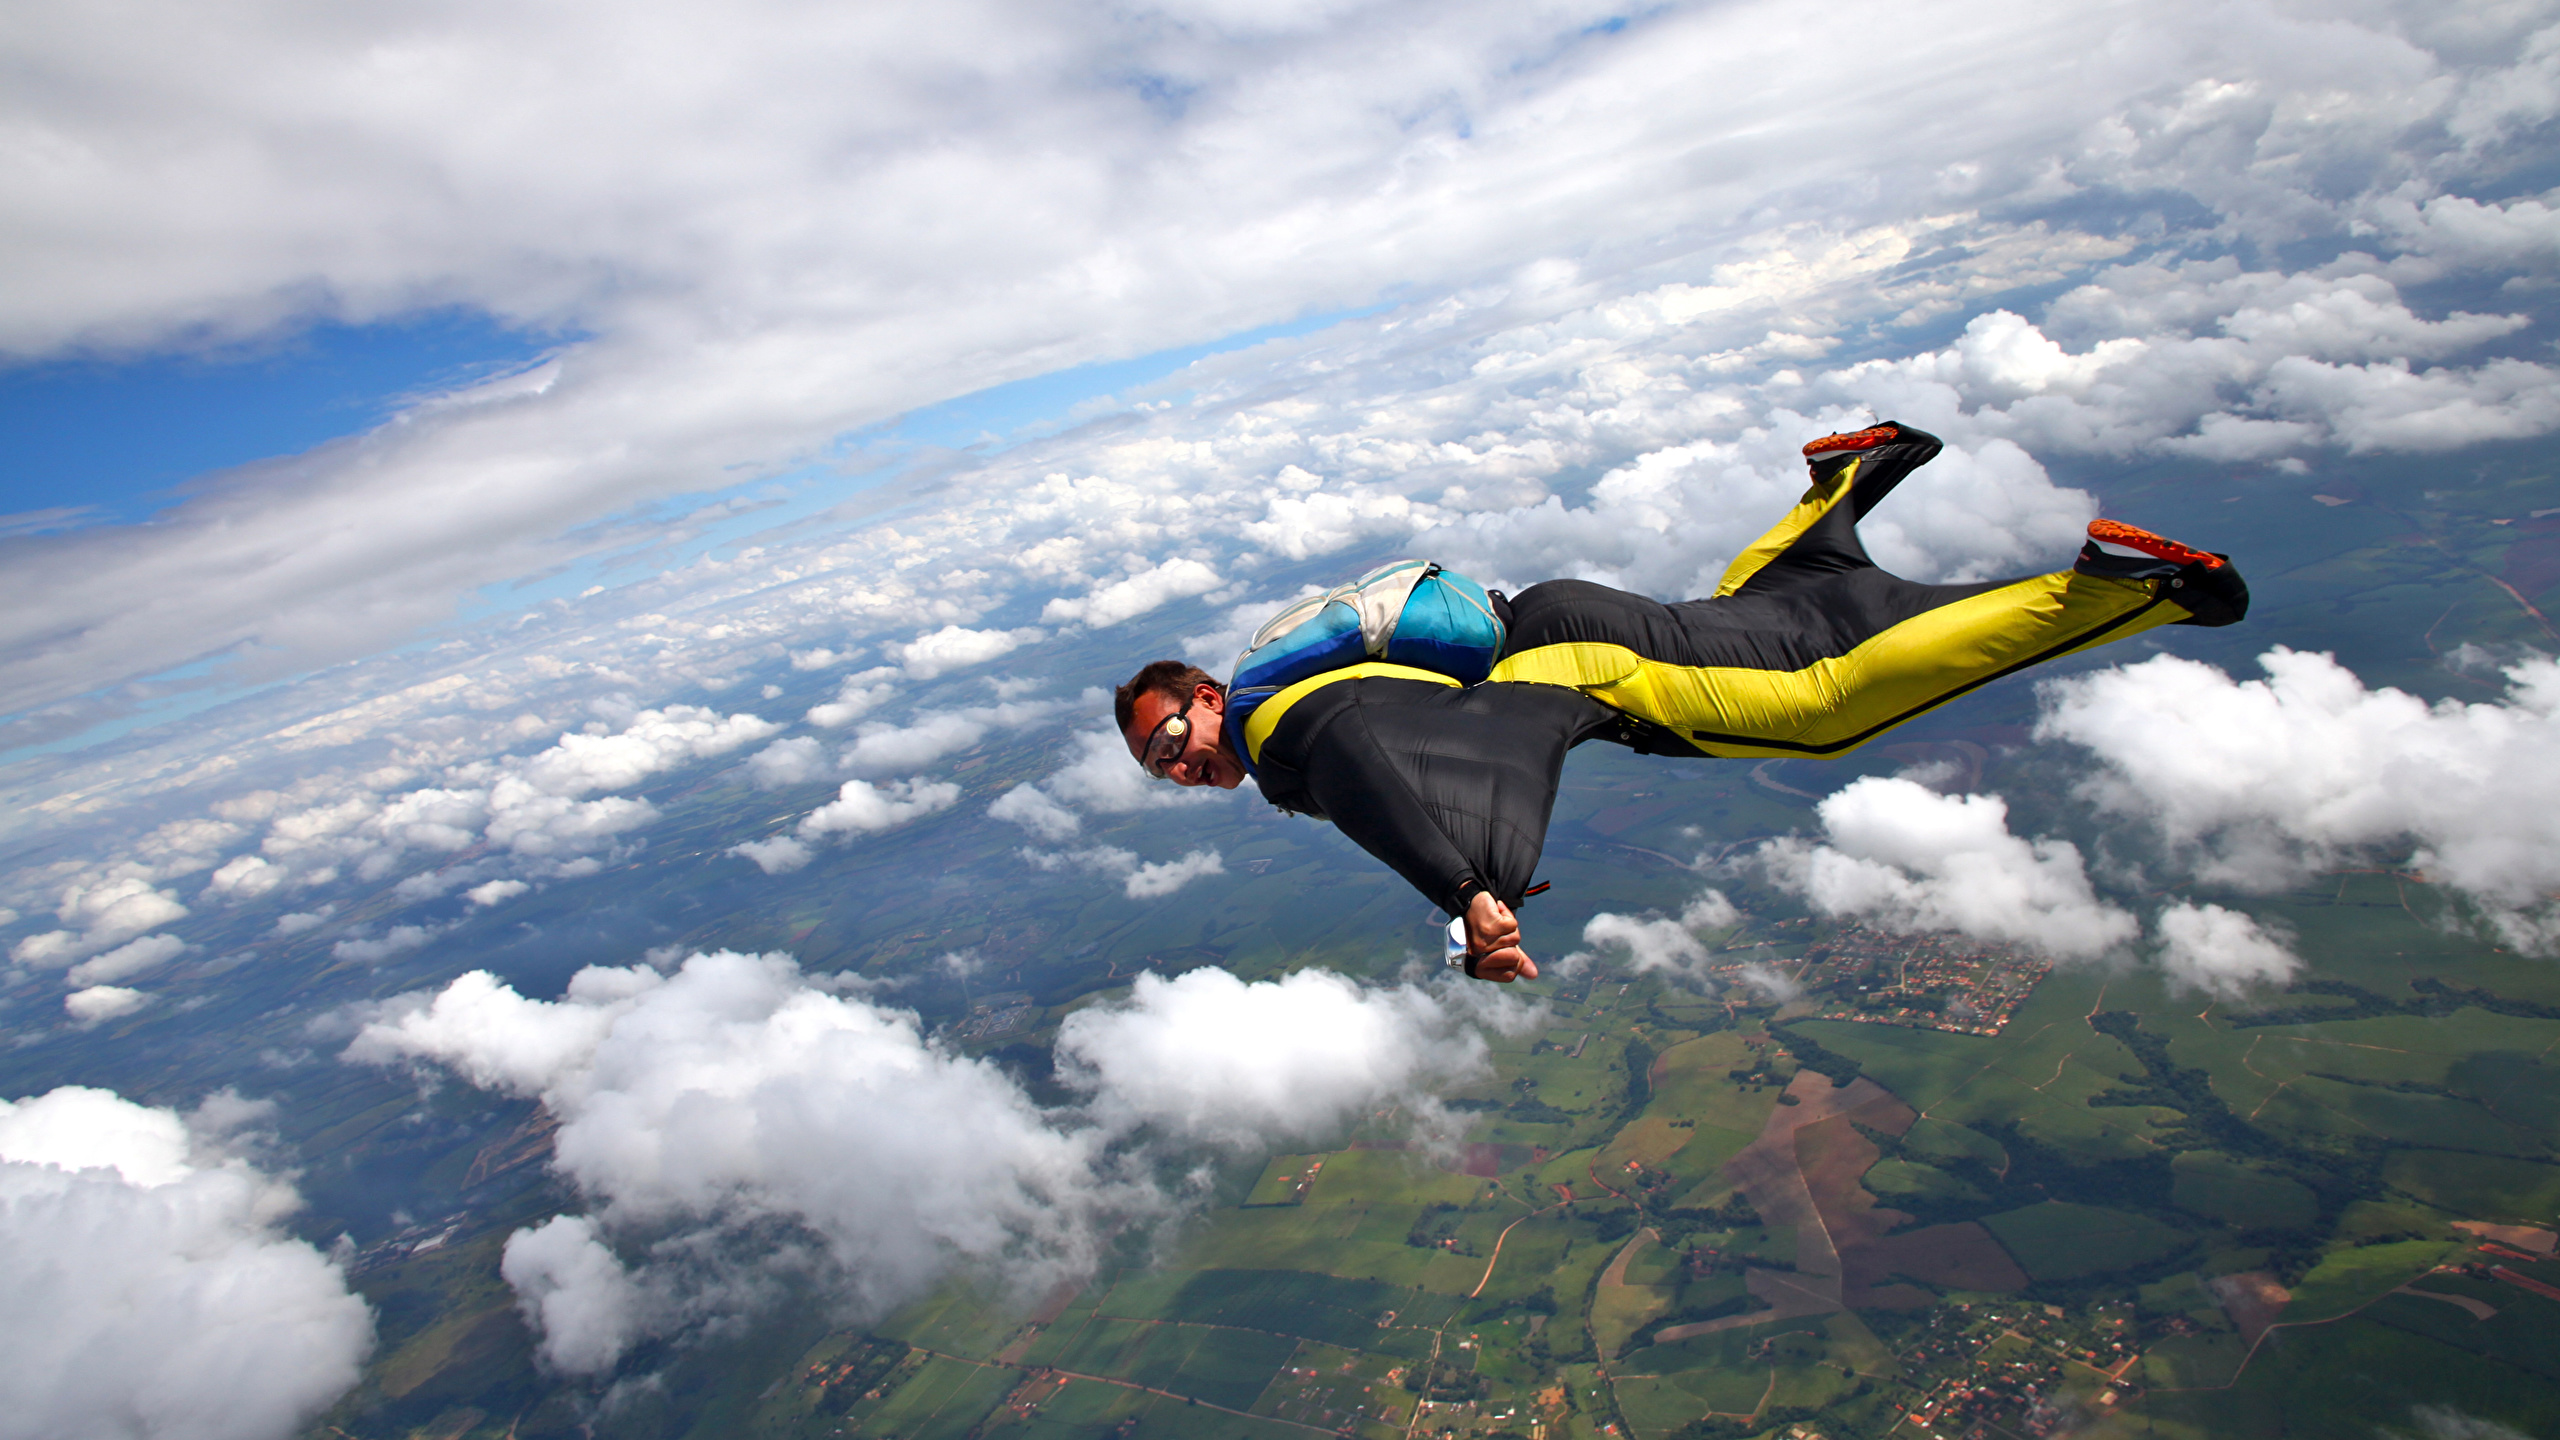 壁紙 2560x1440 スカイダイビング 男性 飛翔 雲 制服 スポーツ ダウンロード 写真